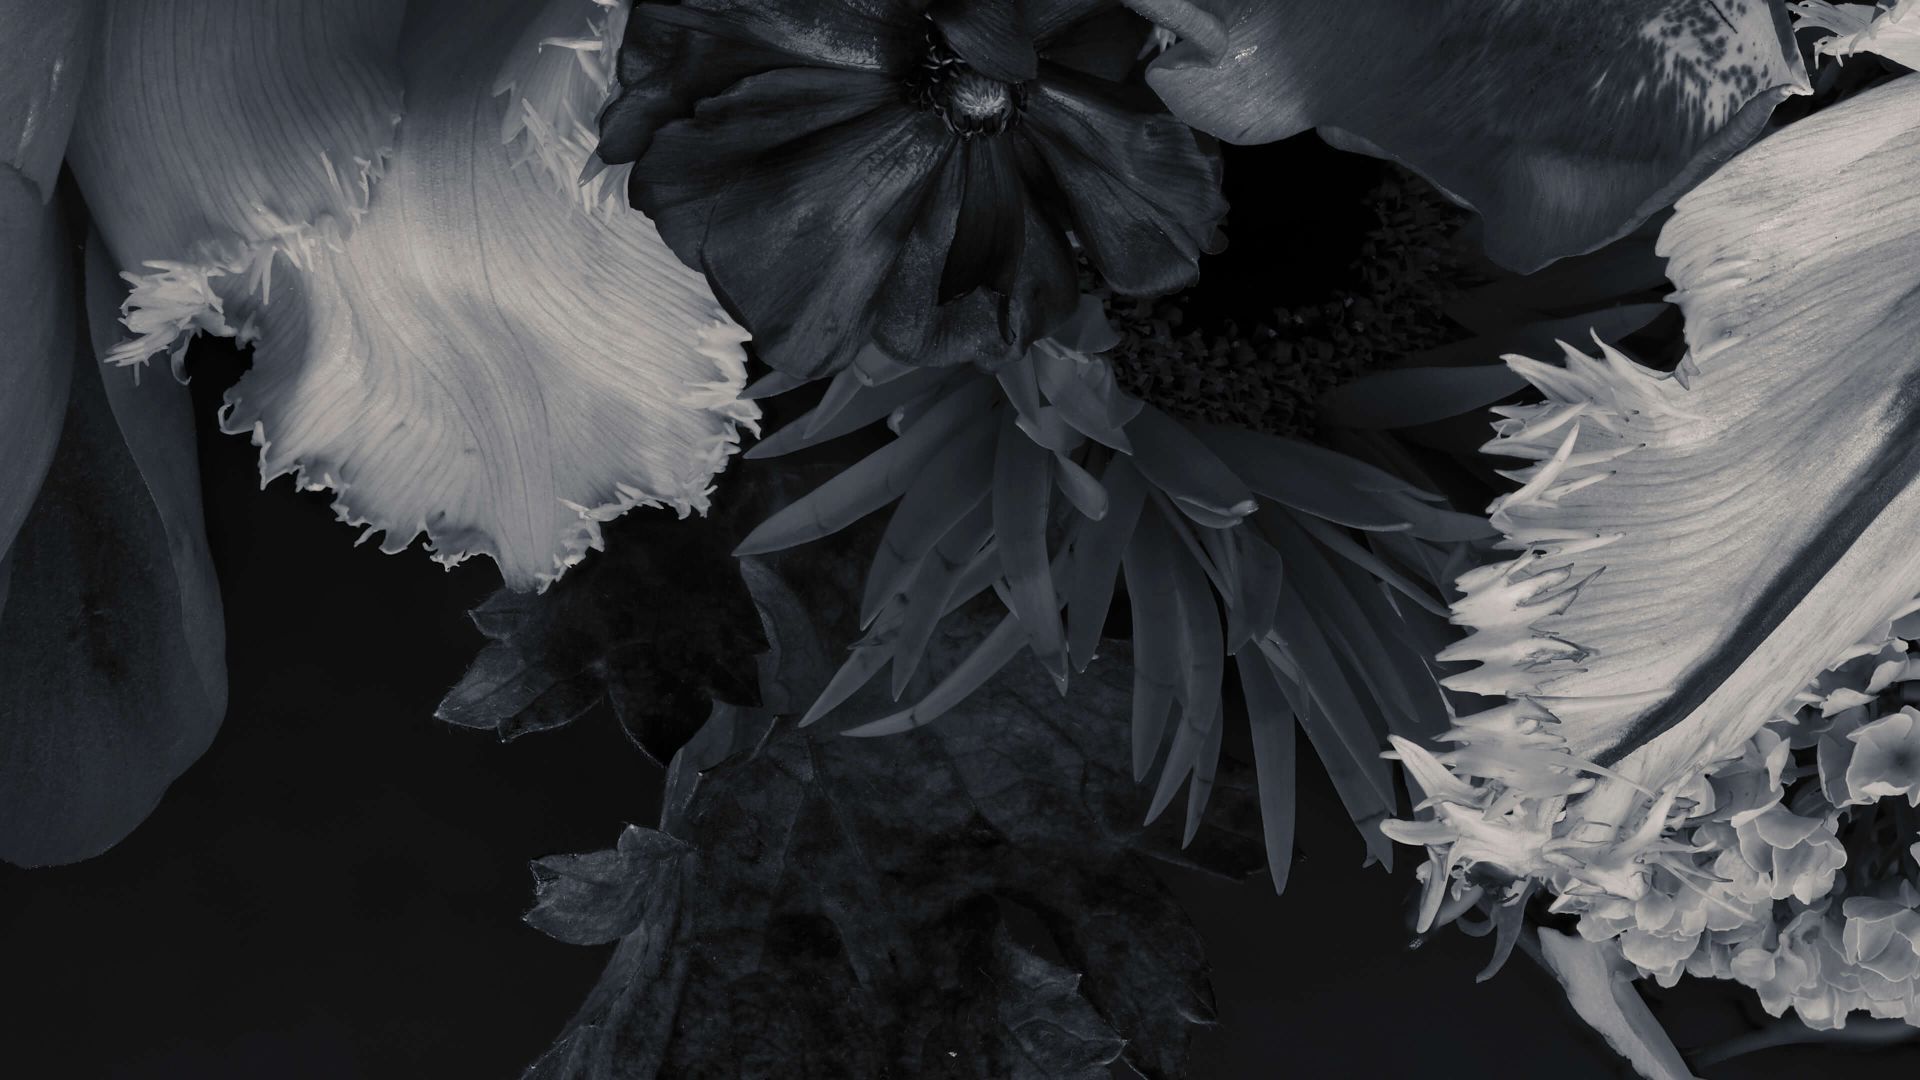  Blumen Schwarz Weiß Hintergrundbild 1920x1080. Fototapete Blumen in Schwarz und Weiß